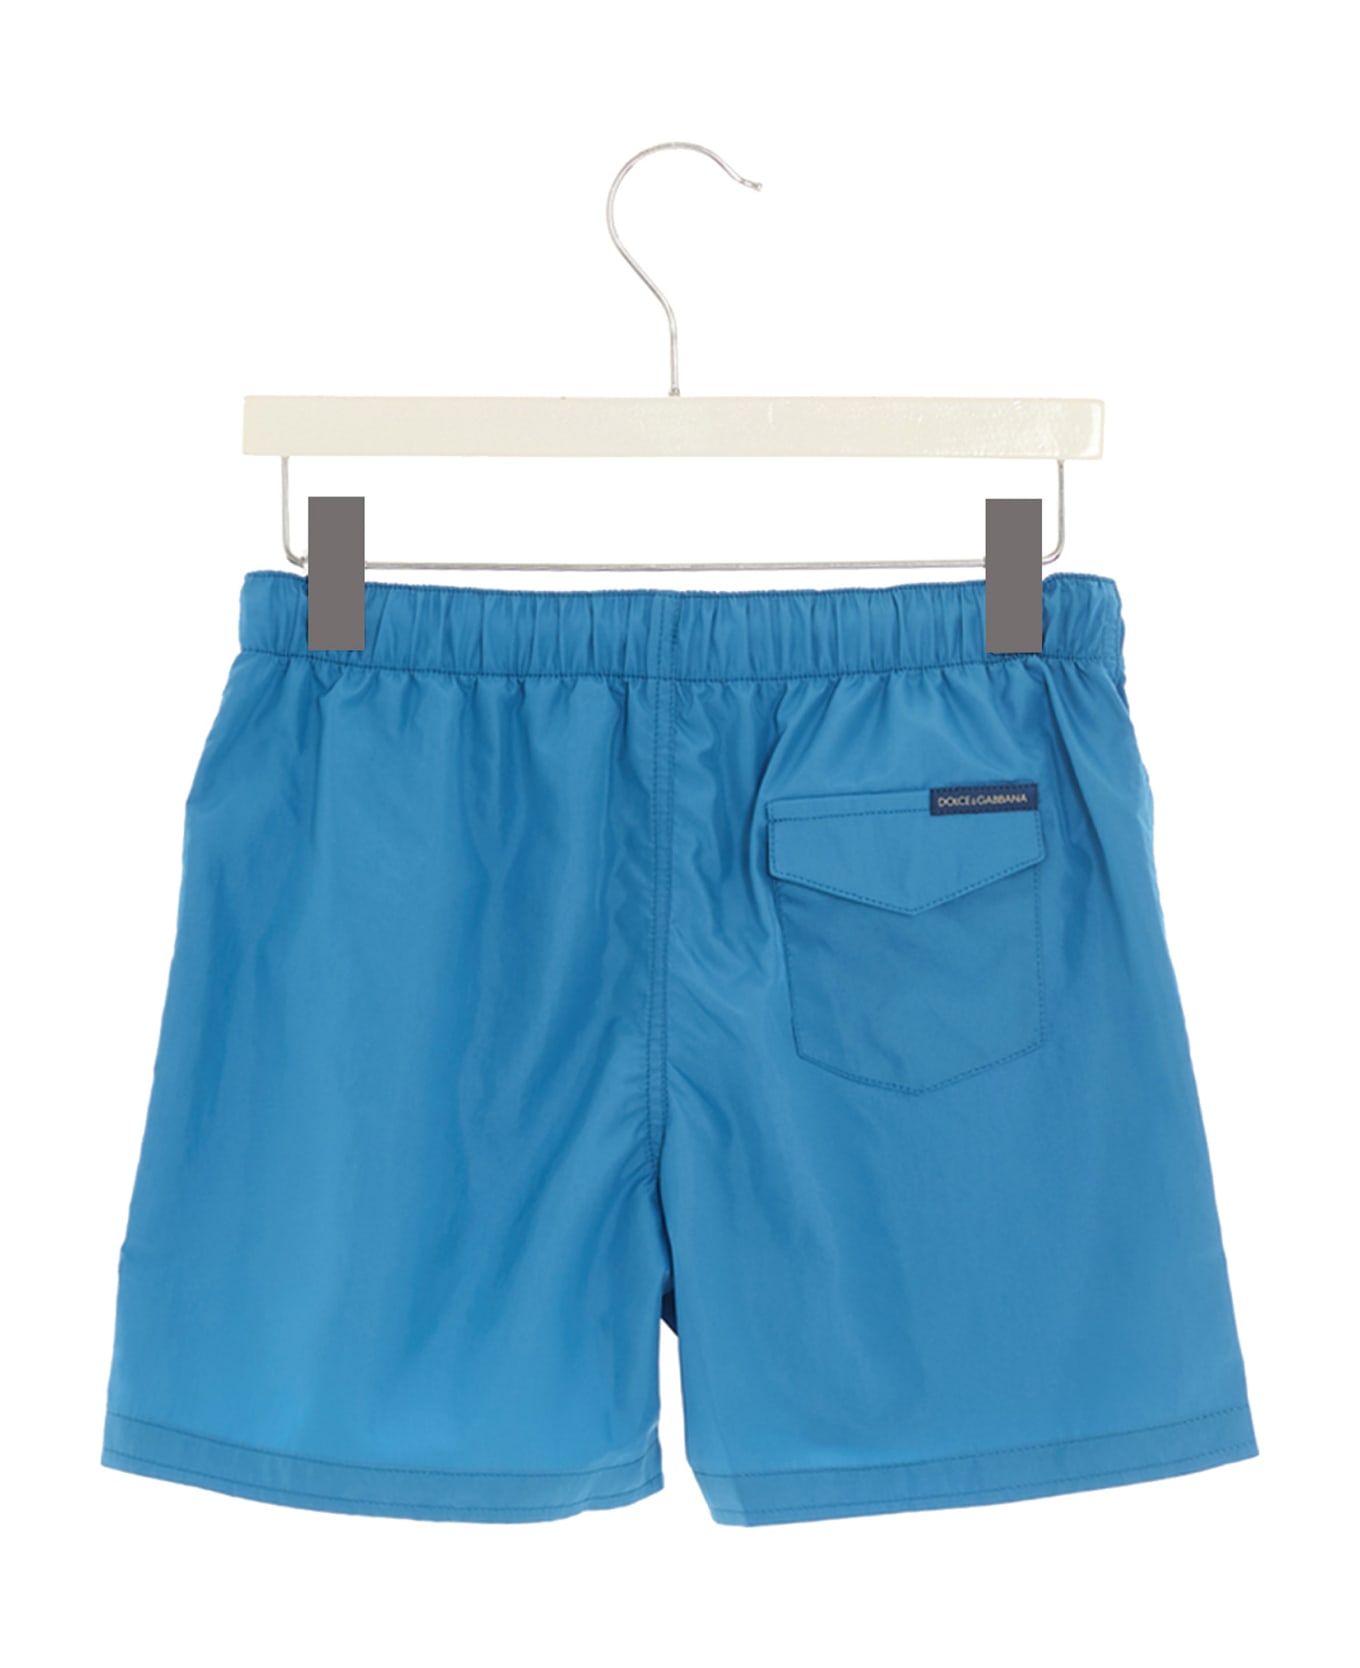 Dolce & Gabbana Side Band Beach Shorts - Light Blue